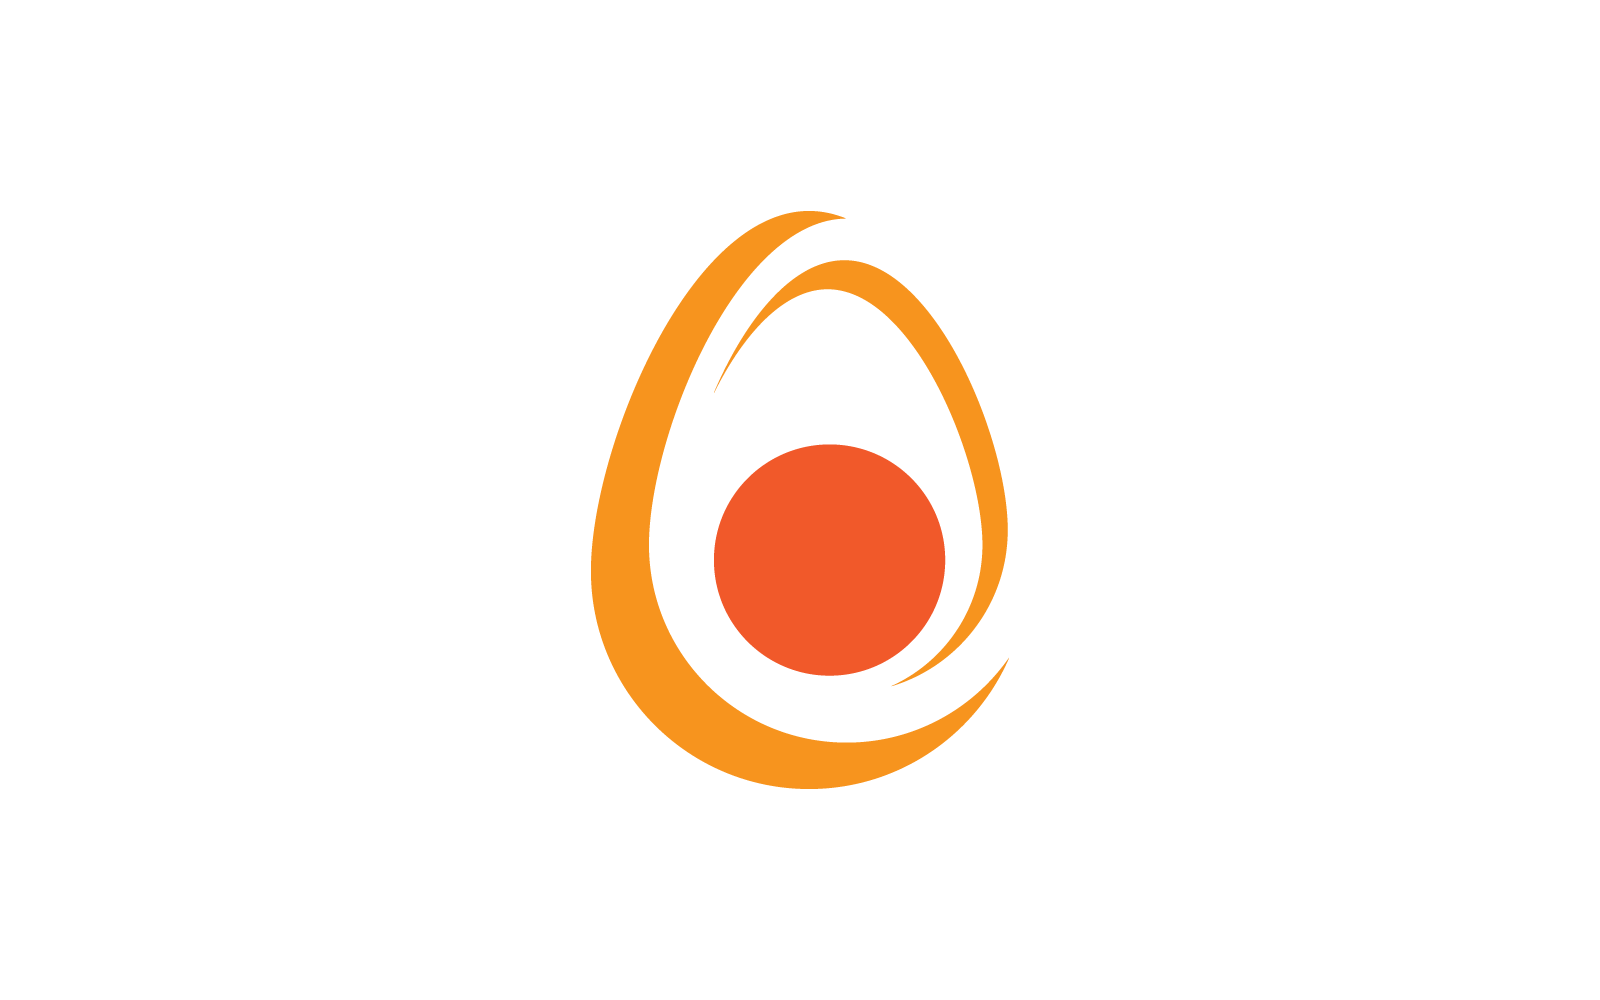 Egg logo icon vector flat design